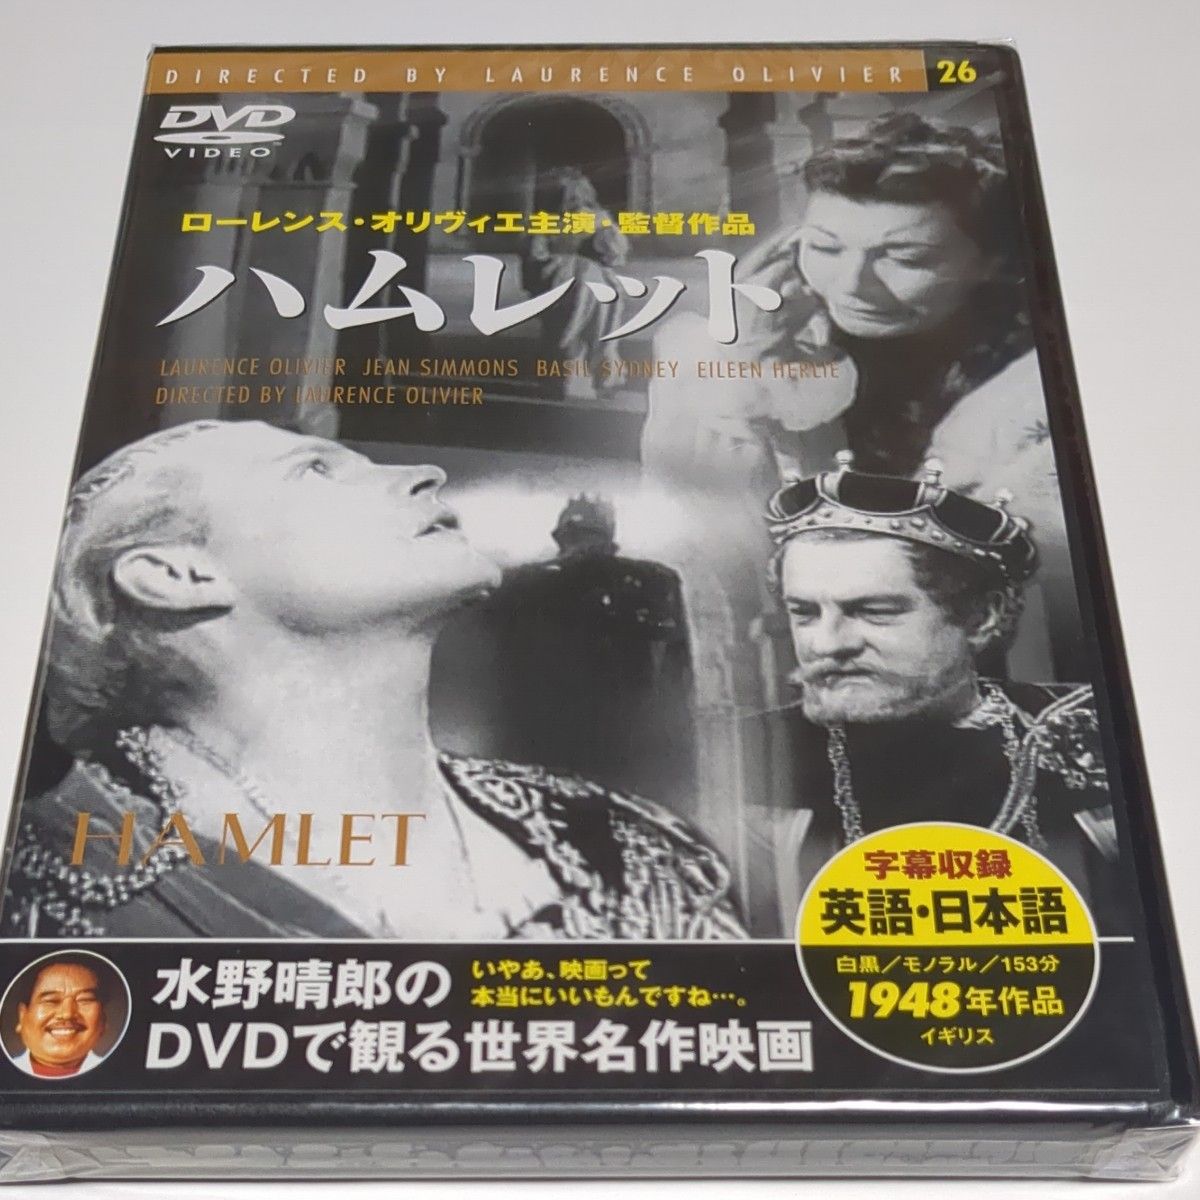 水野晴郎のDVDで観る世界名作映画   ハムレット  ローレンス・オリヴィエ主演監督作品  1948年作品